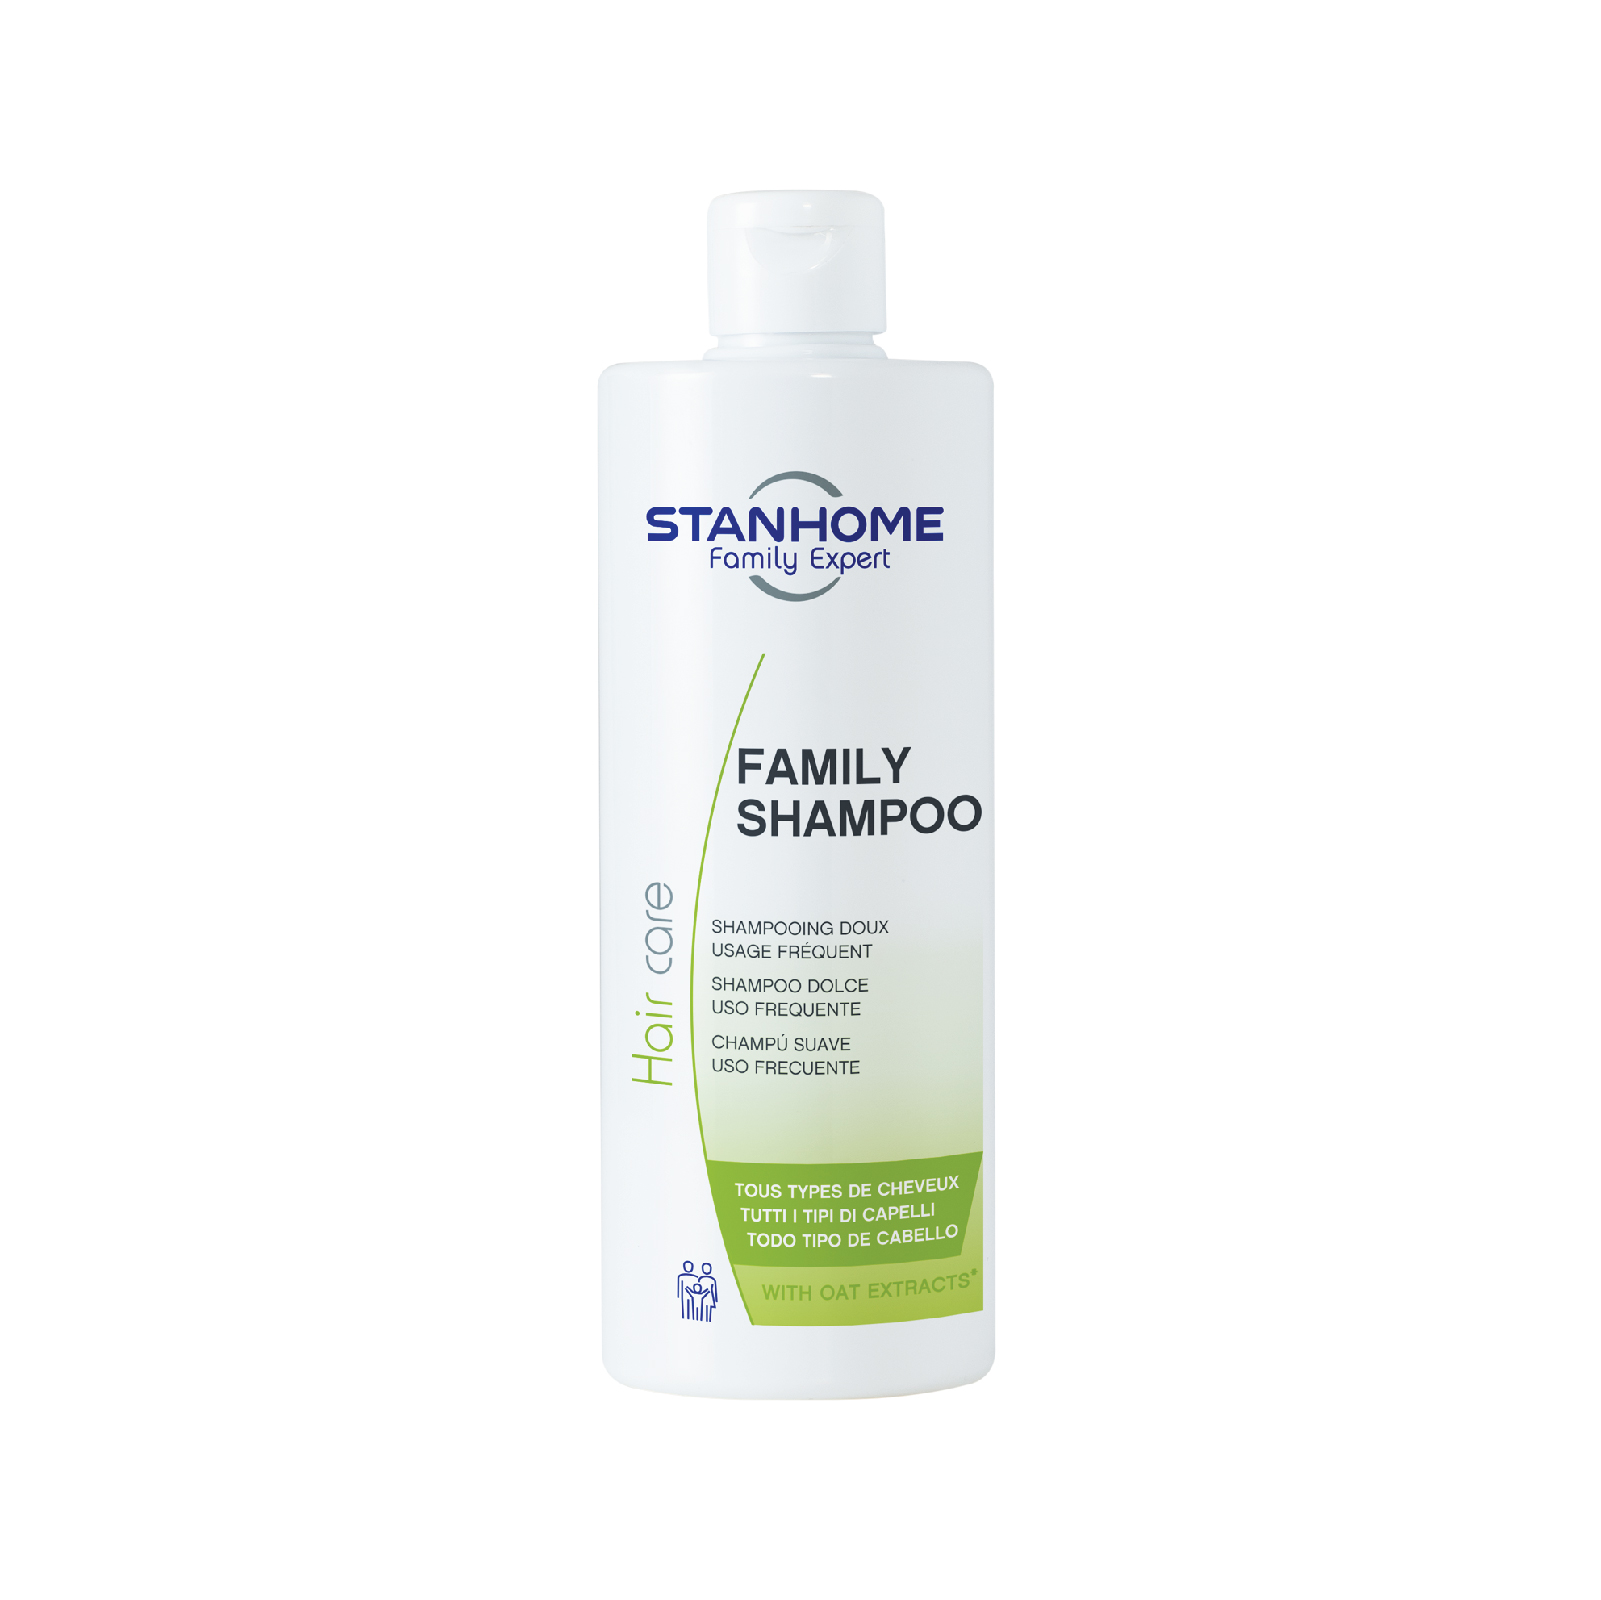 Dầu Gội Làm Sạch Và Ngăn Ngừa Gàu Stanhome Family Expert Balance Shampoo  200ml